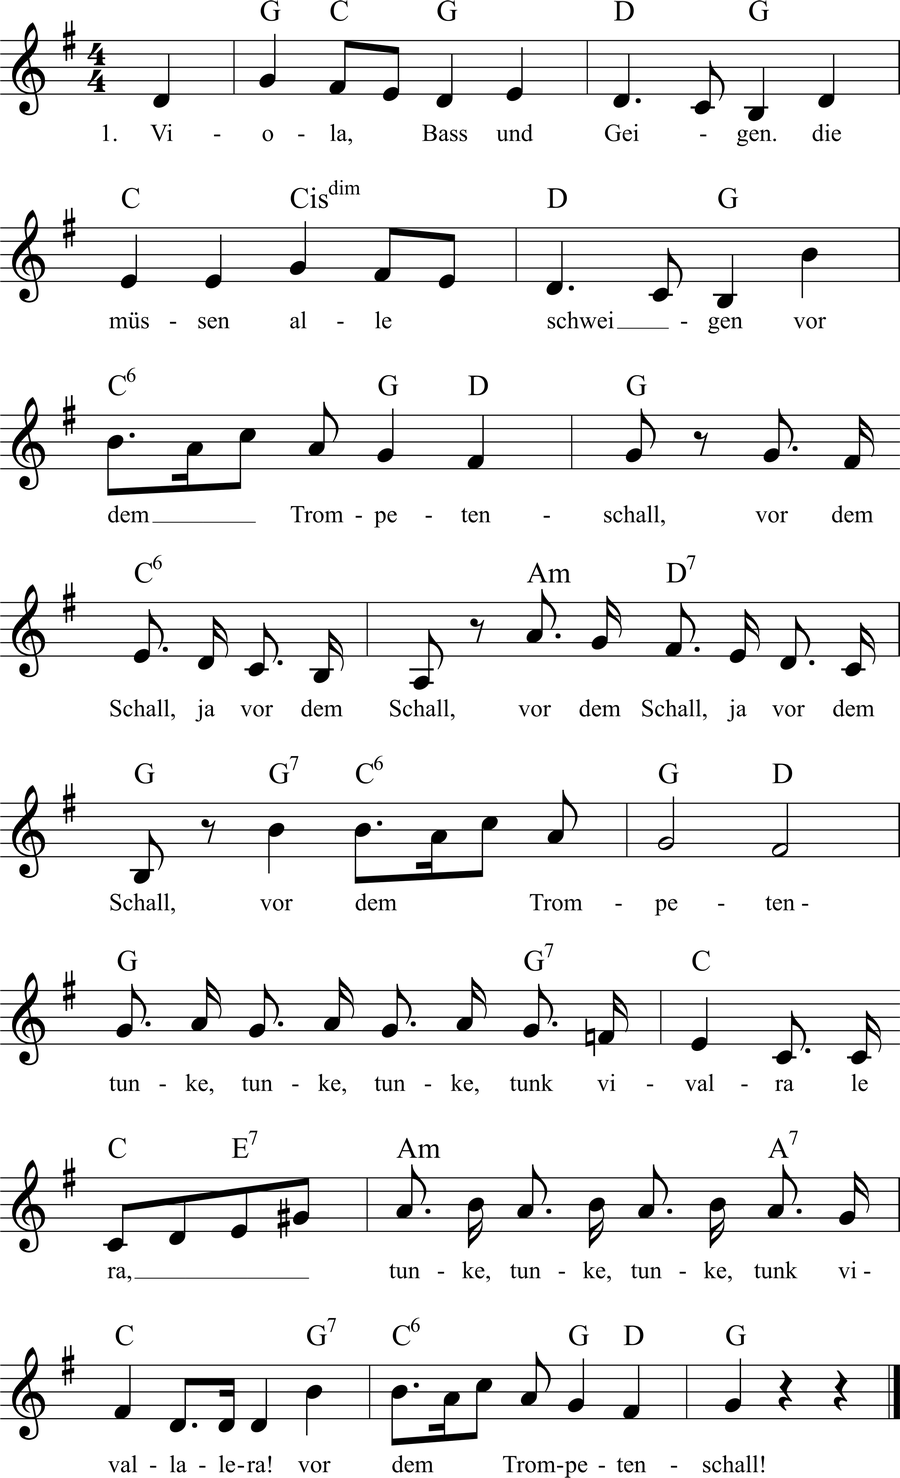 Musiknoten zum Lied - Viola, Bass und Geigen (Trompetentunke)